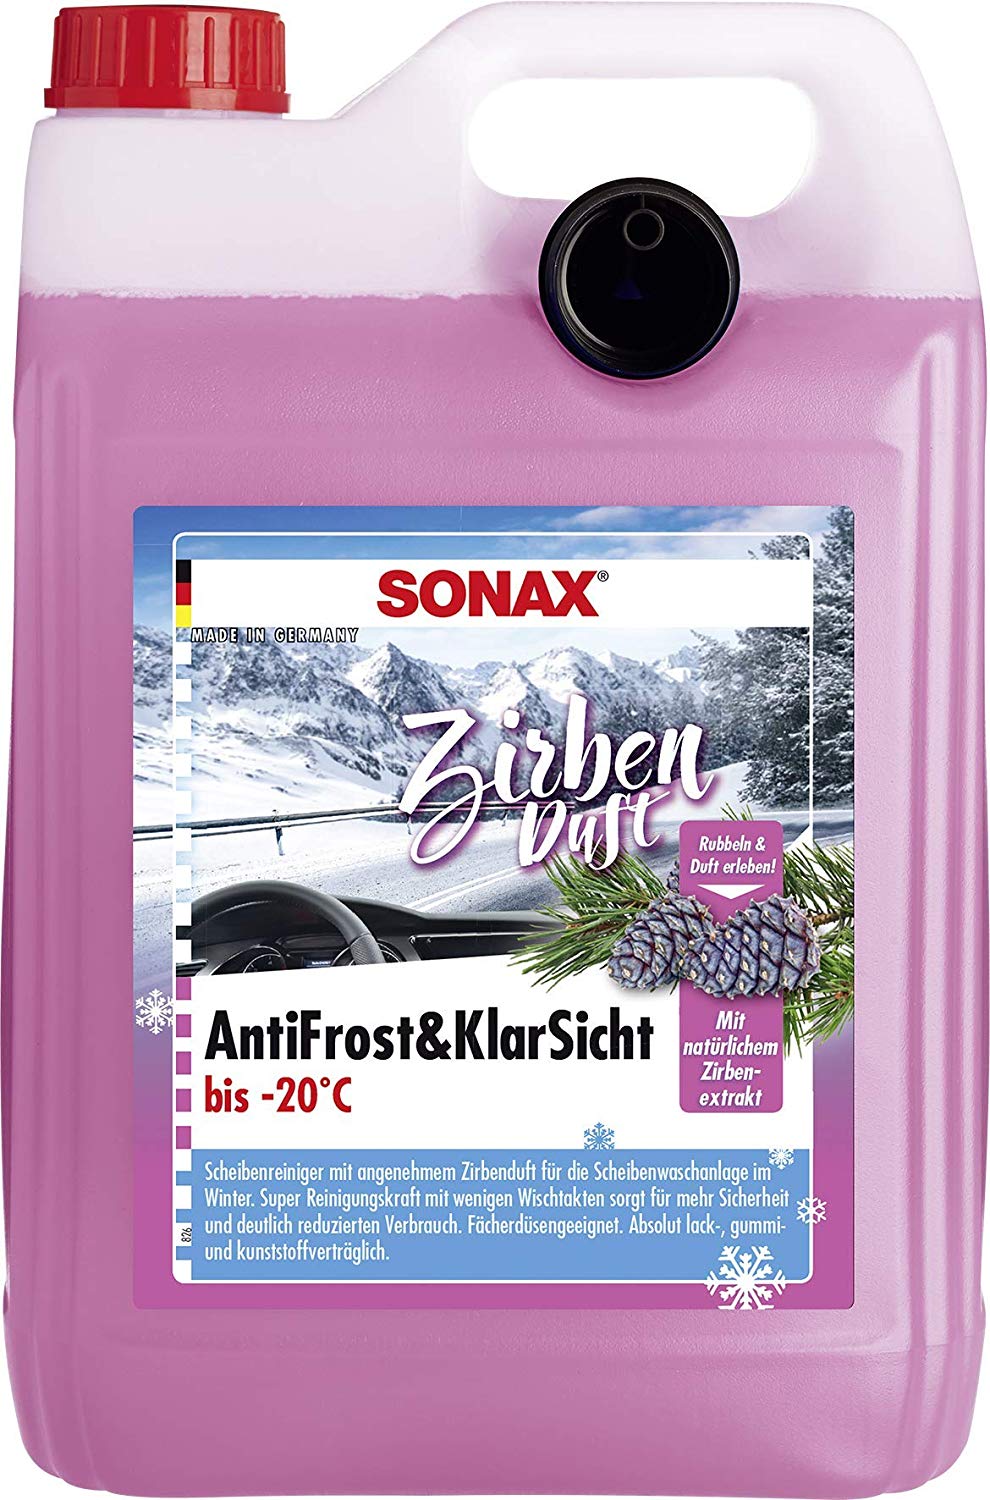 Sonax AntiFrost & KlarSicht Zirbe 5 Liter